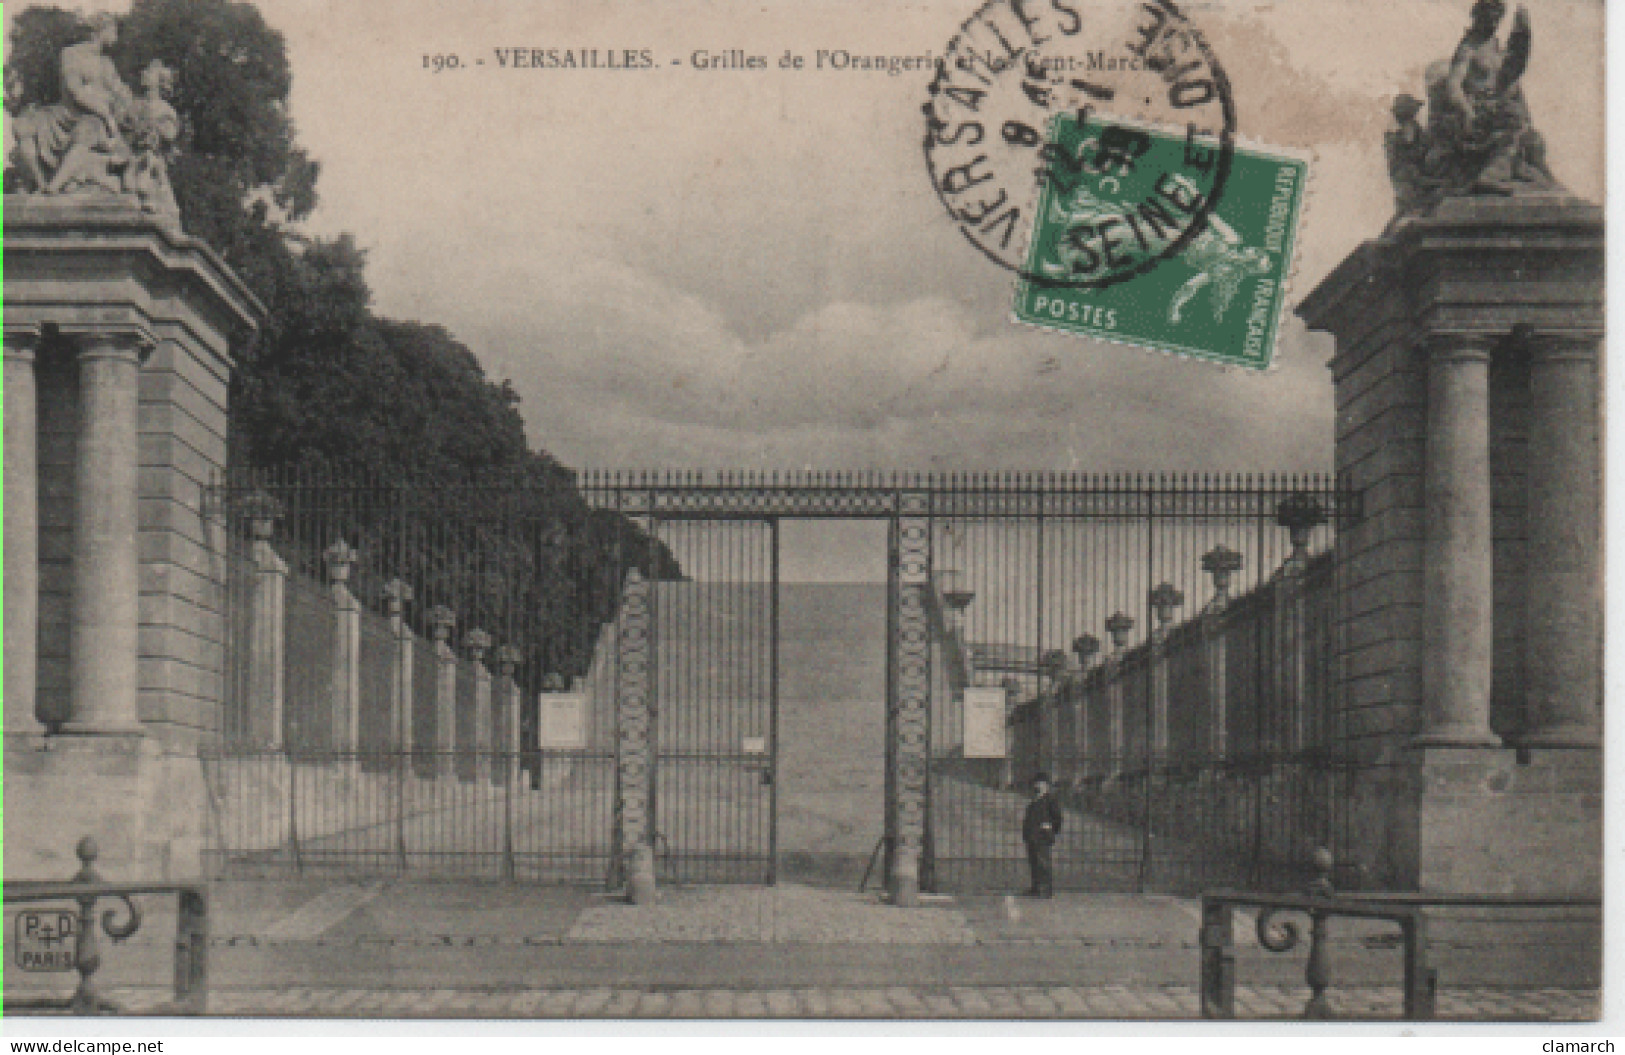 YVELINES-Versailles-Grilles De L'Orangerie Et Les Cent Marches - P+D 190 - Versailles